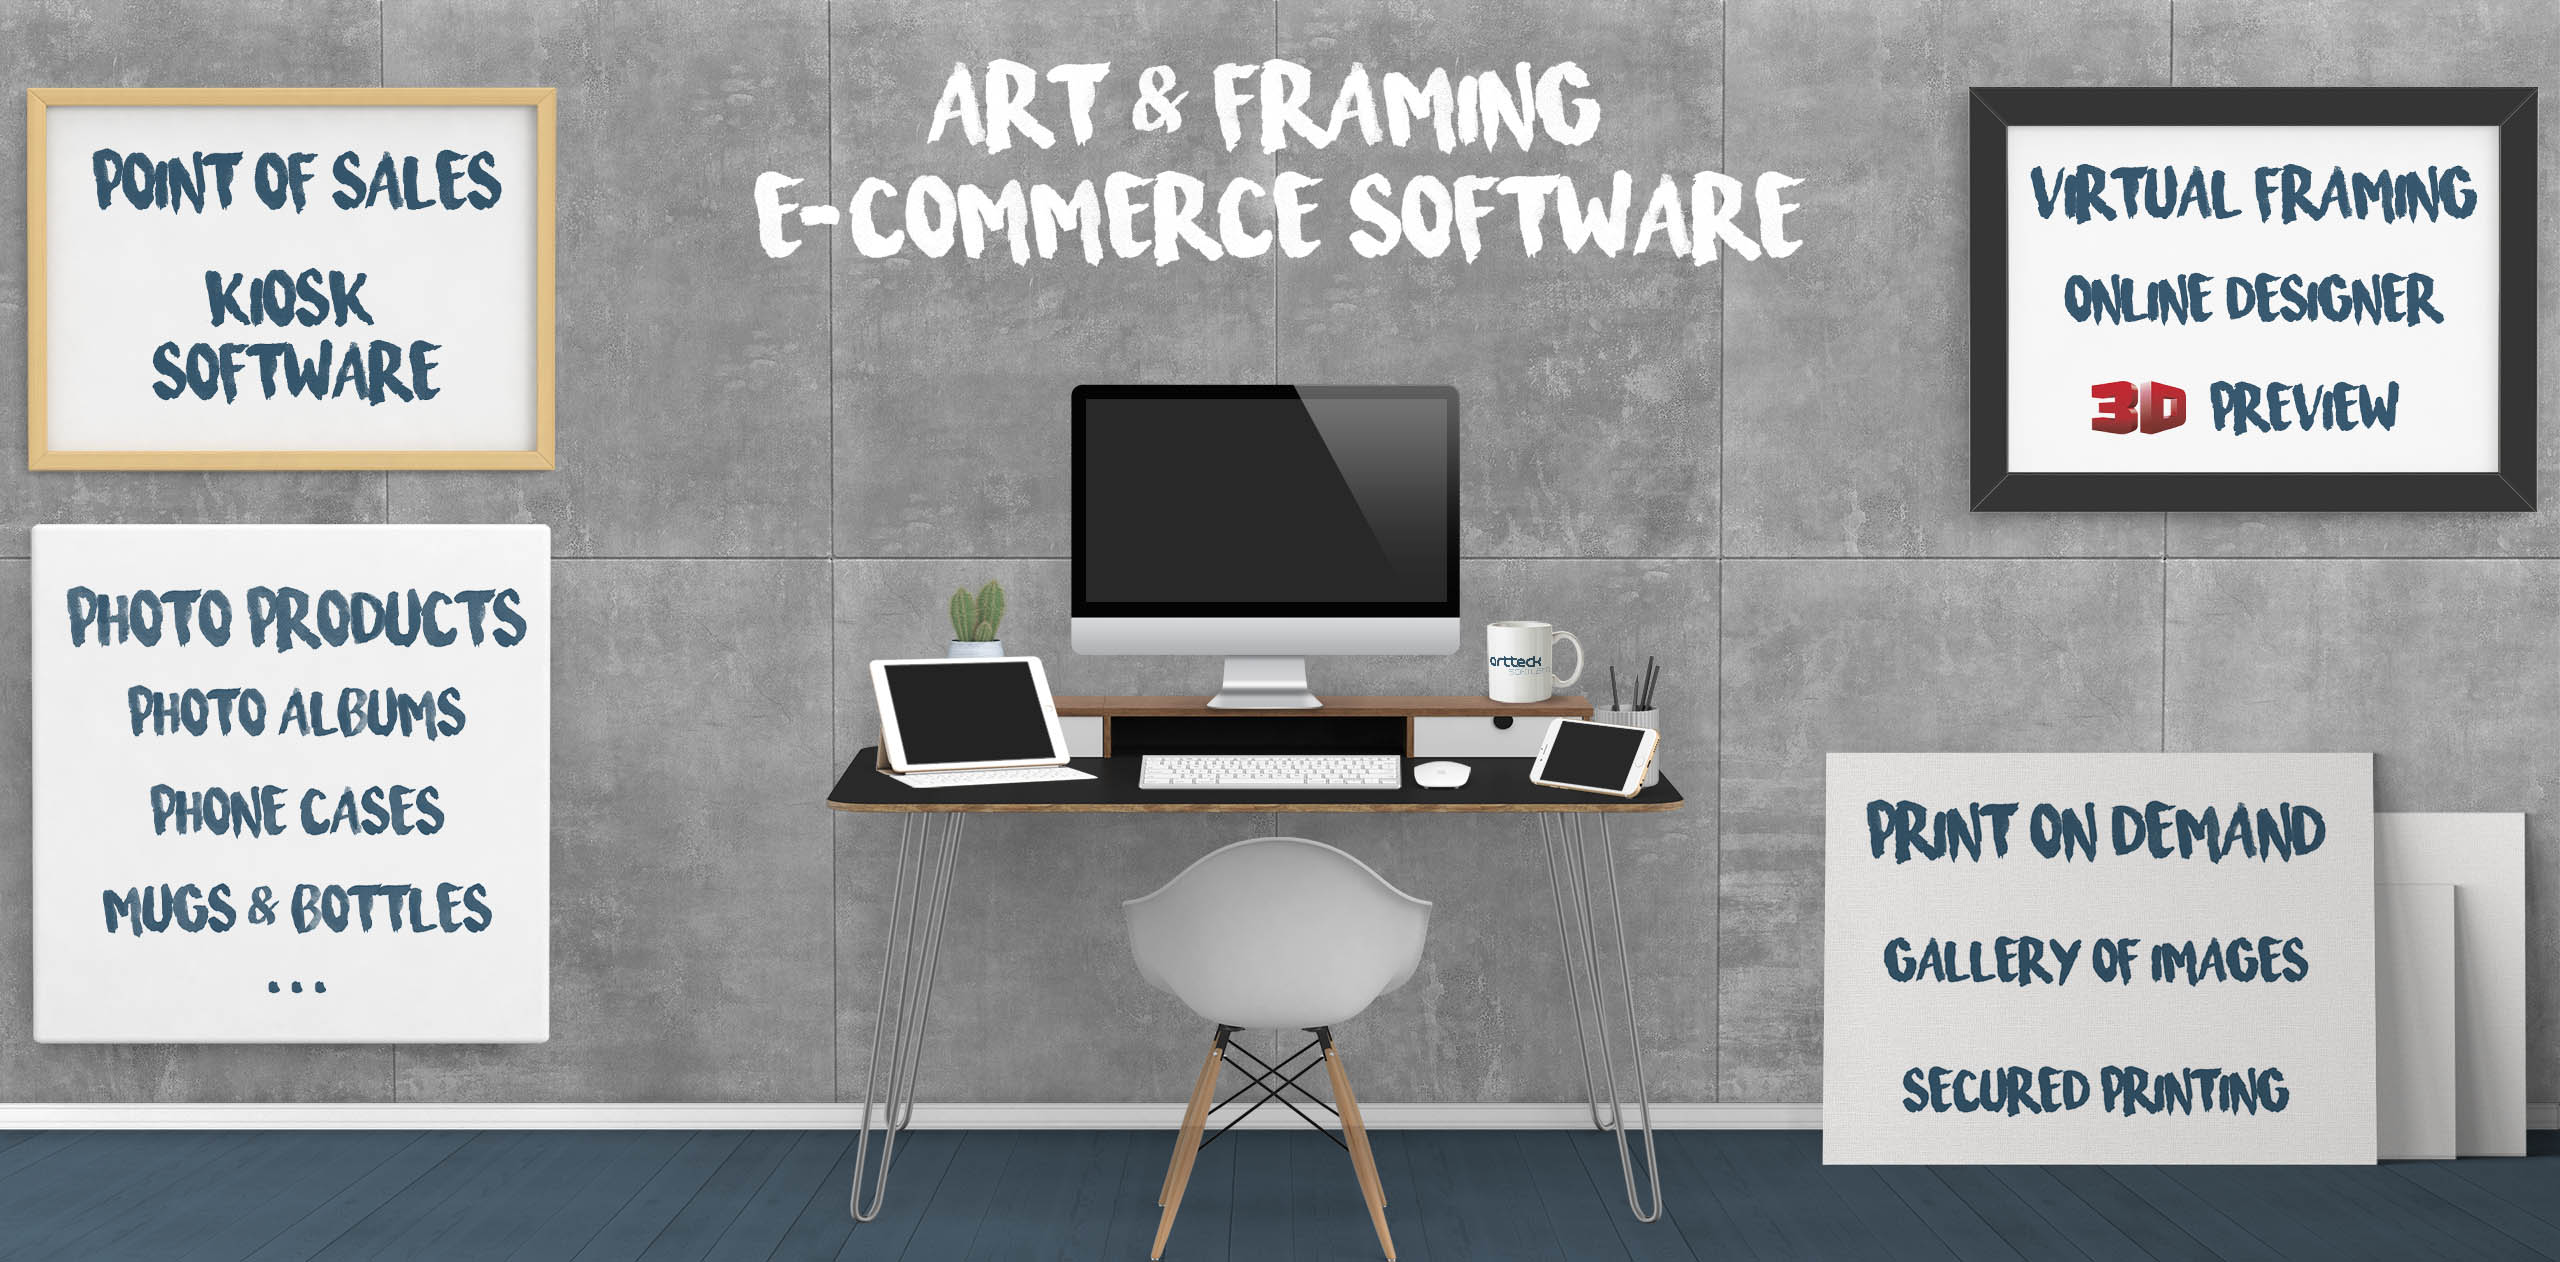 Art & Framing e-Commerce Software